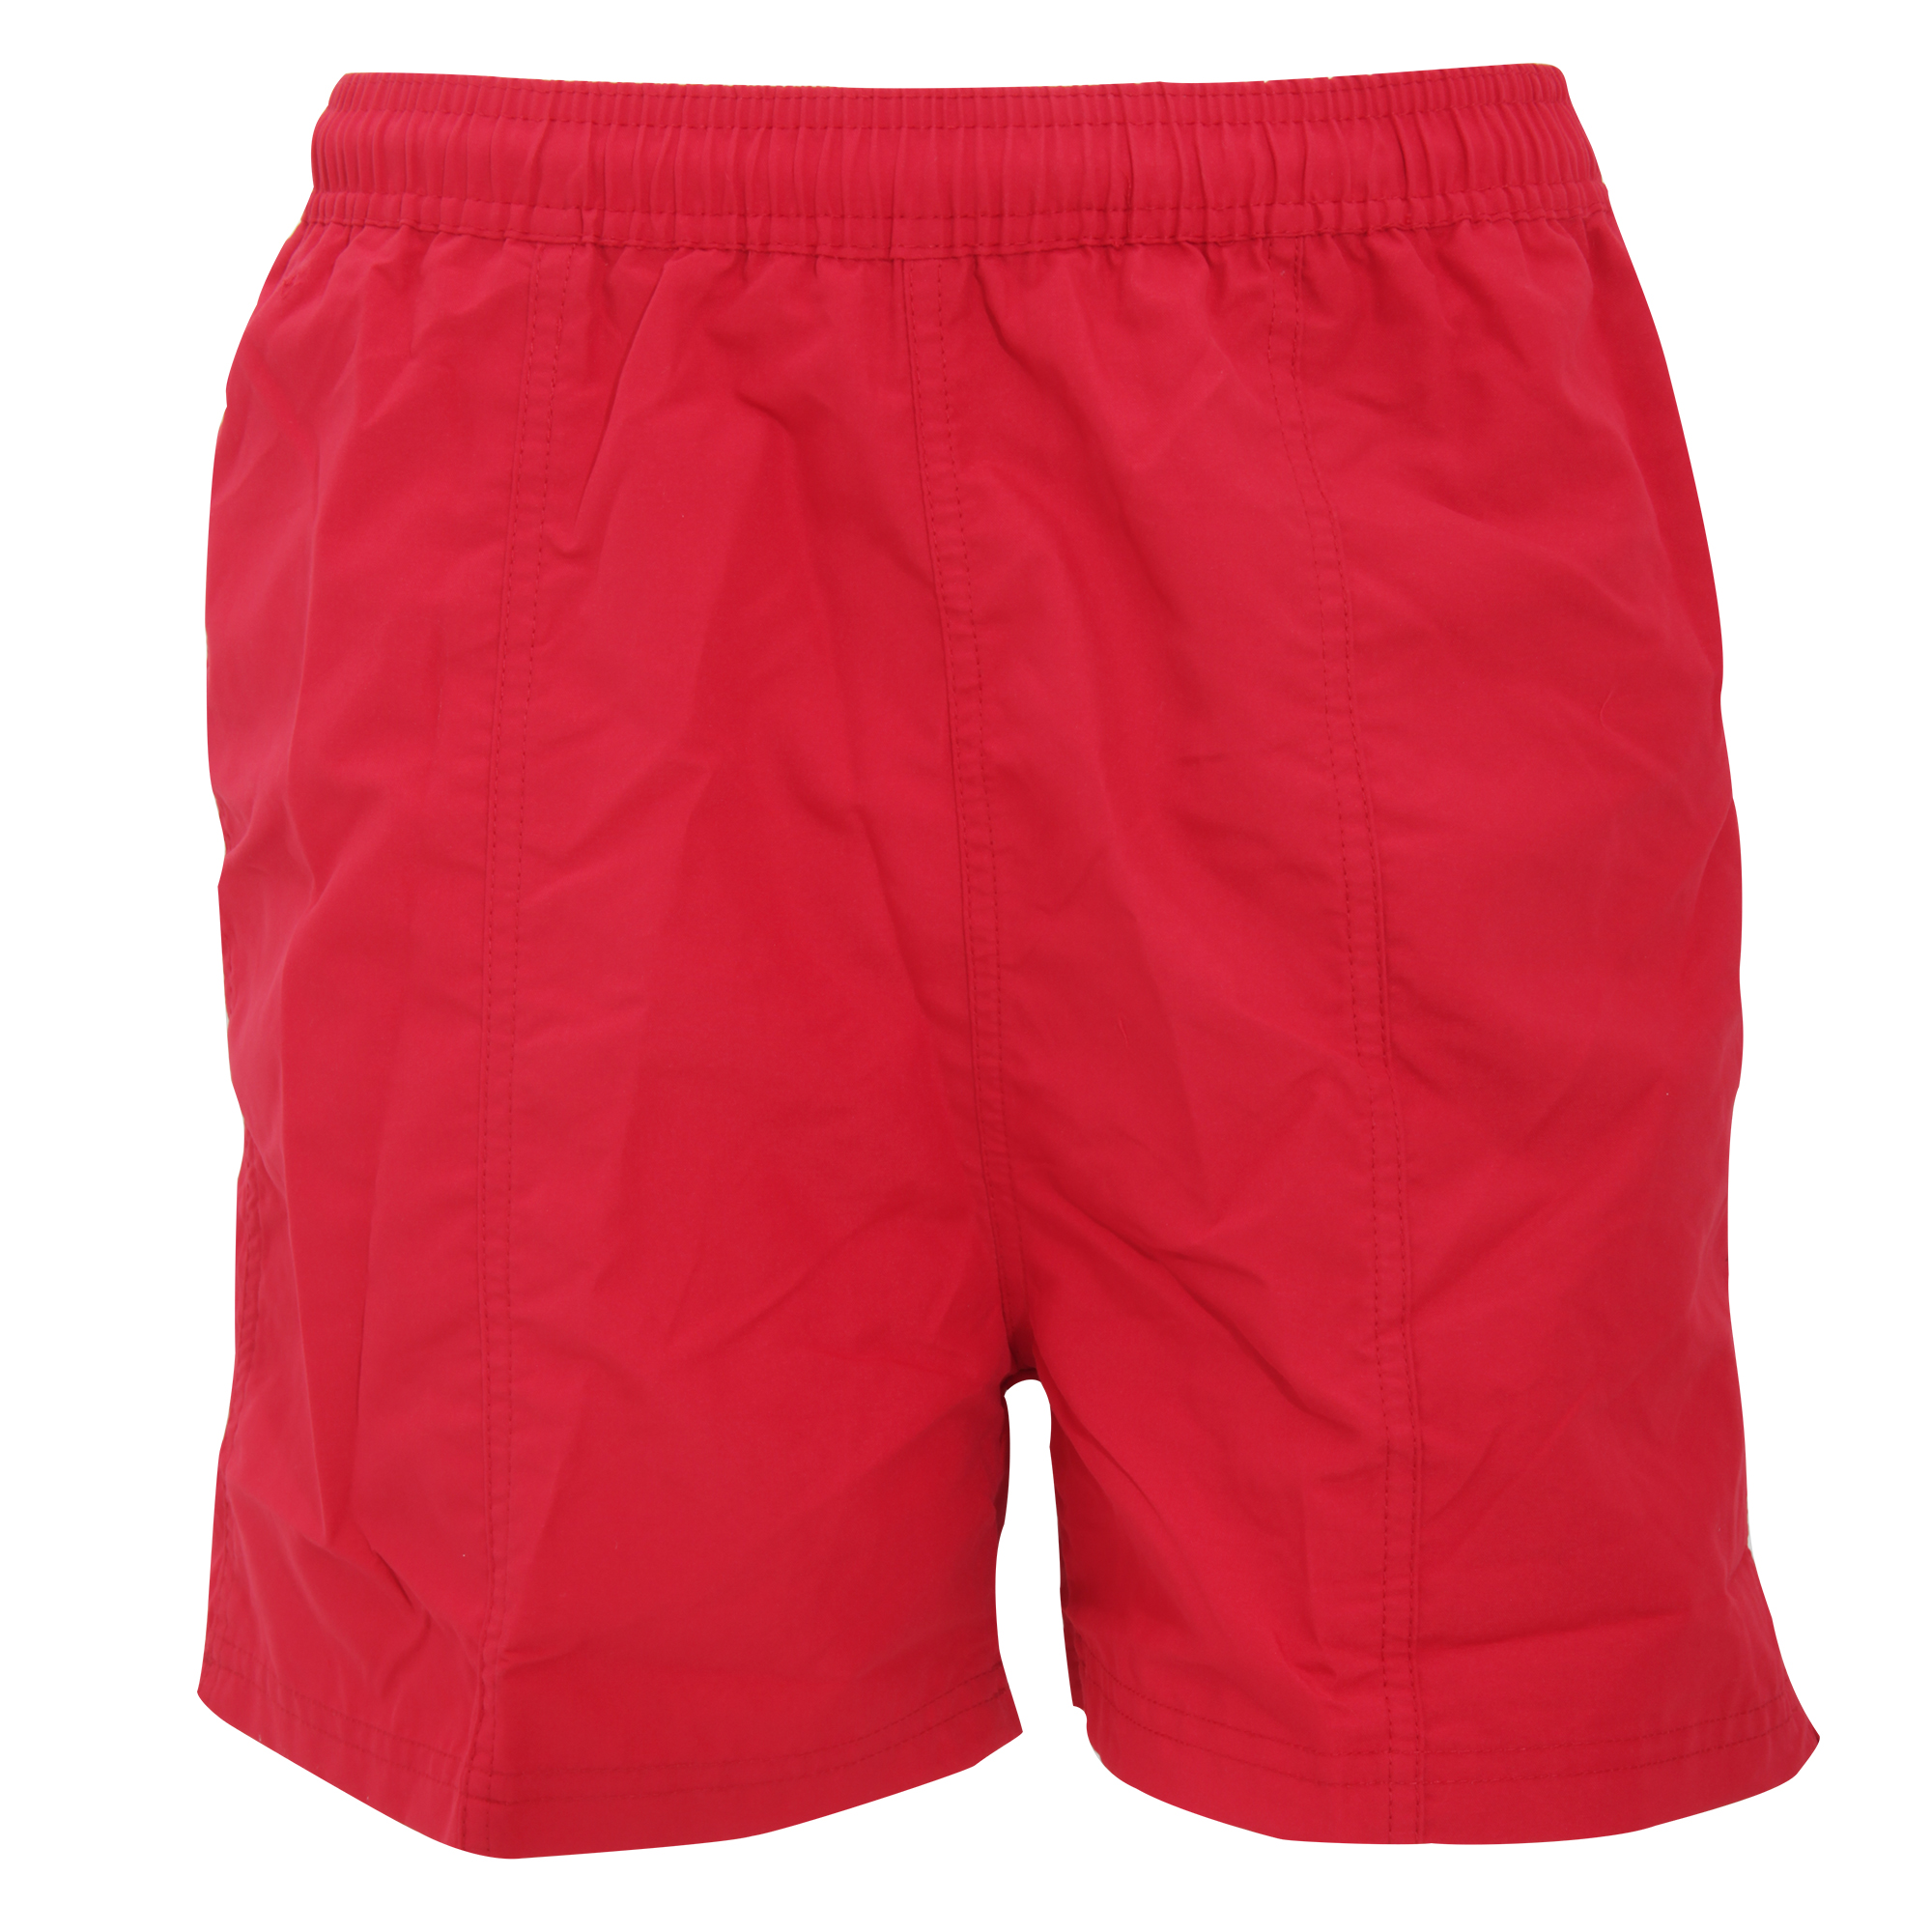 Pantalones Cortos De Deporte Multiusos Modelo All Purpose Tombo - rojo - 